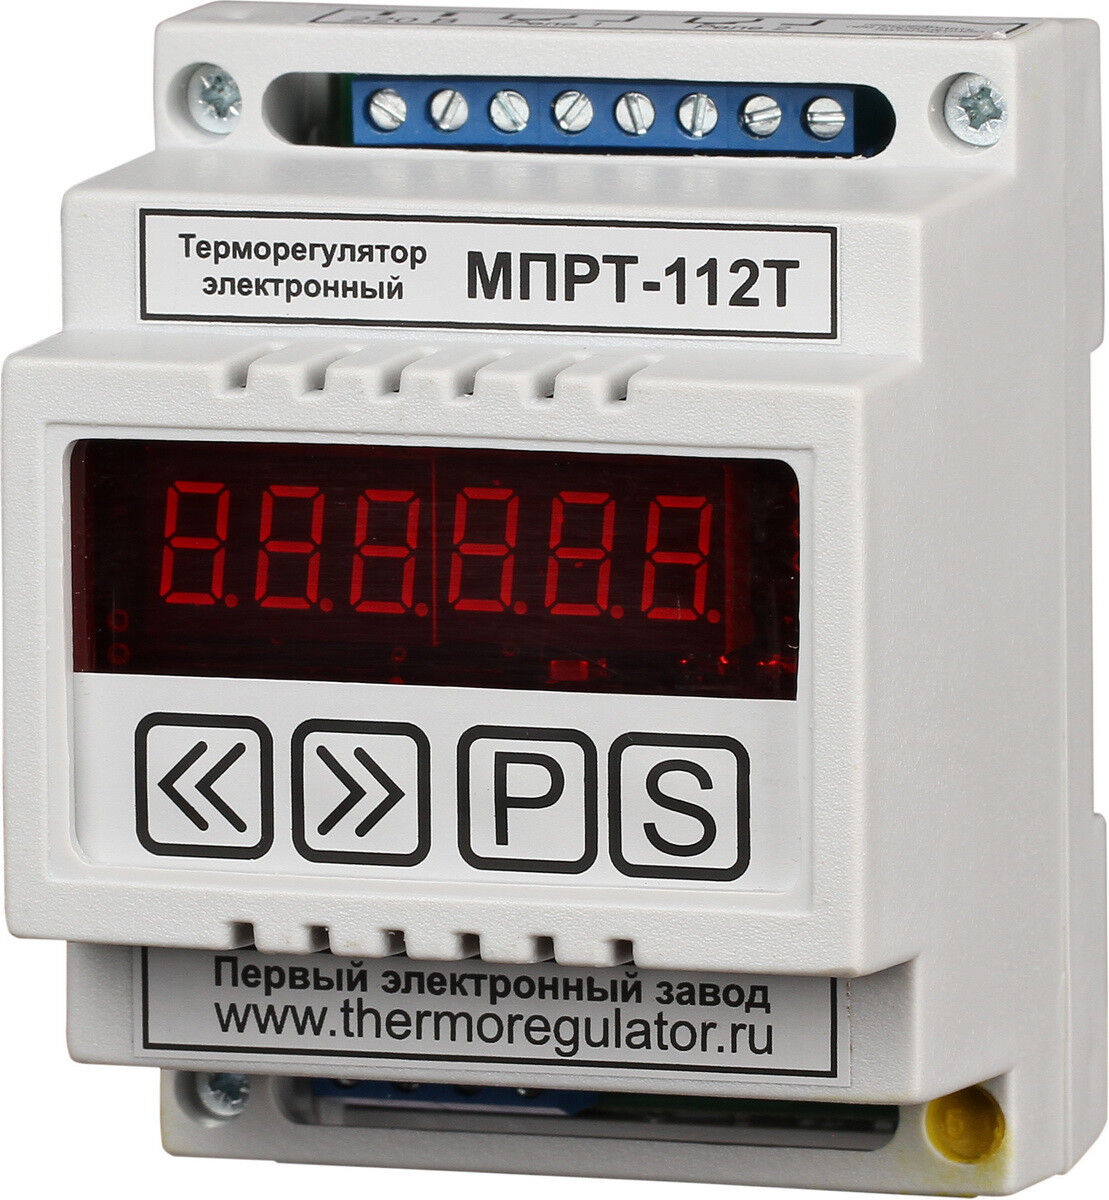 Терморегулятор МПРТ-112Т без датчиков, универсальный вход, цифровое управление DIN ПЭЛЗ